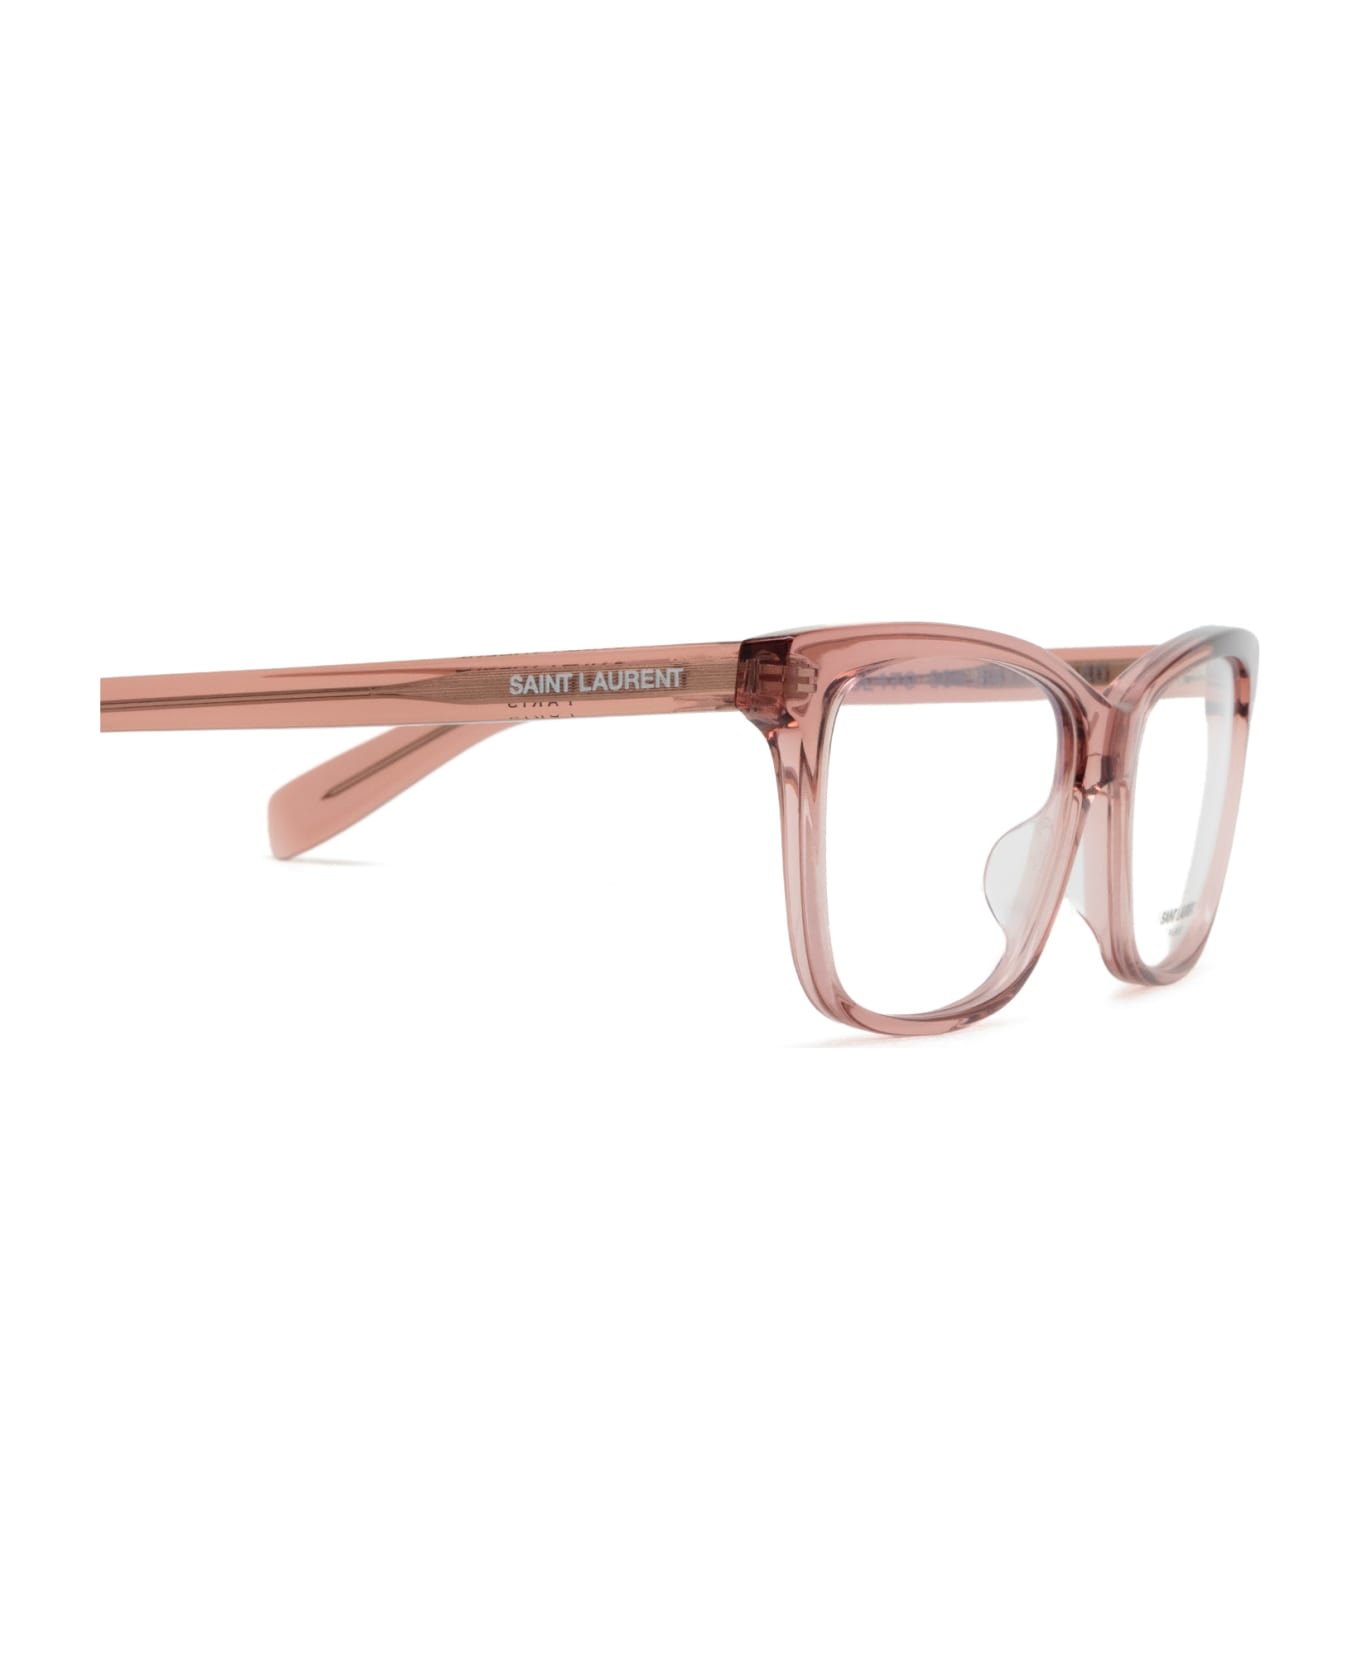 Saint Laurent Eyewear Sl 170 Nude Glasses - Nude